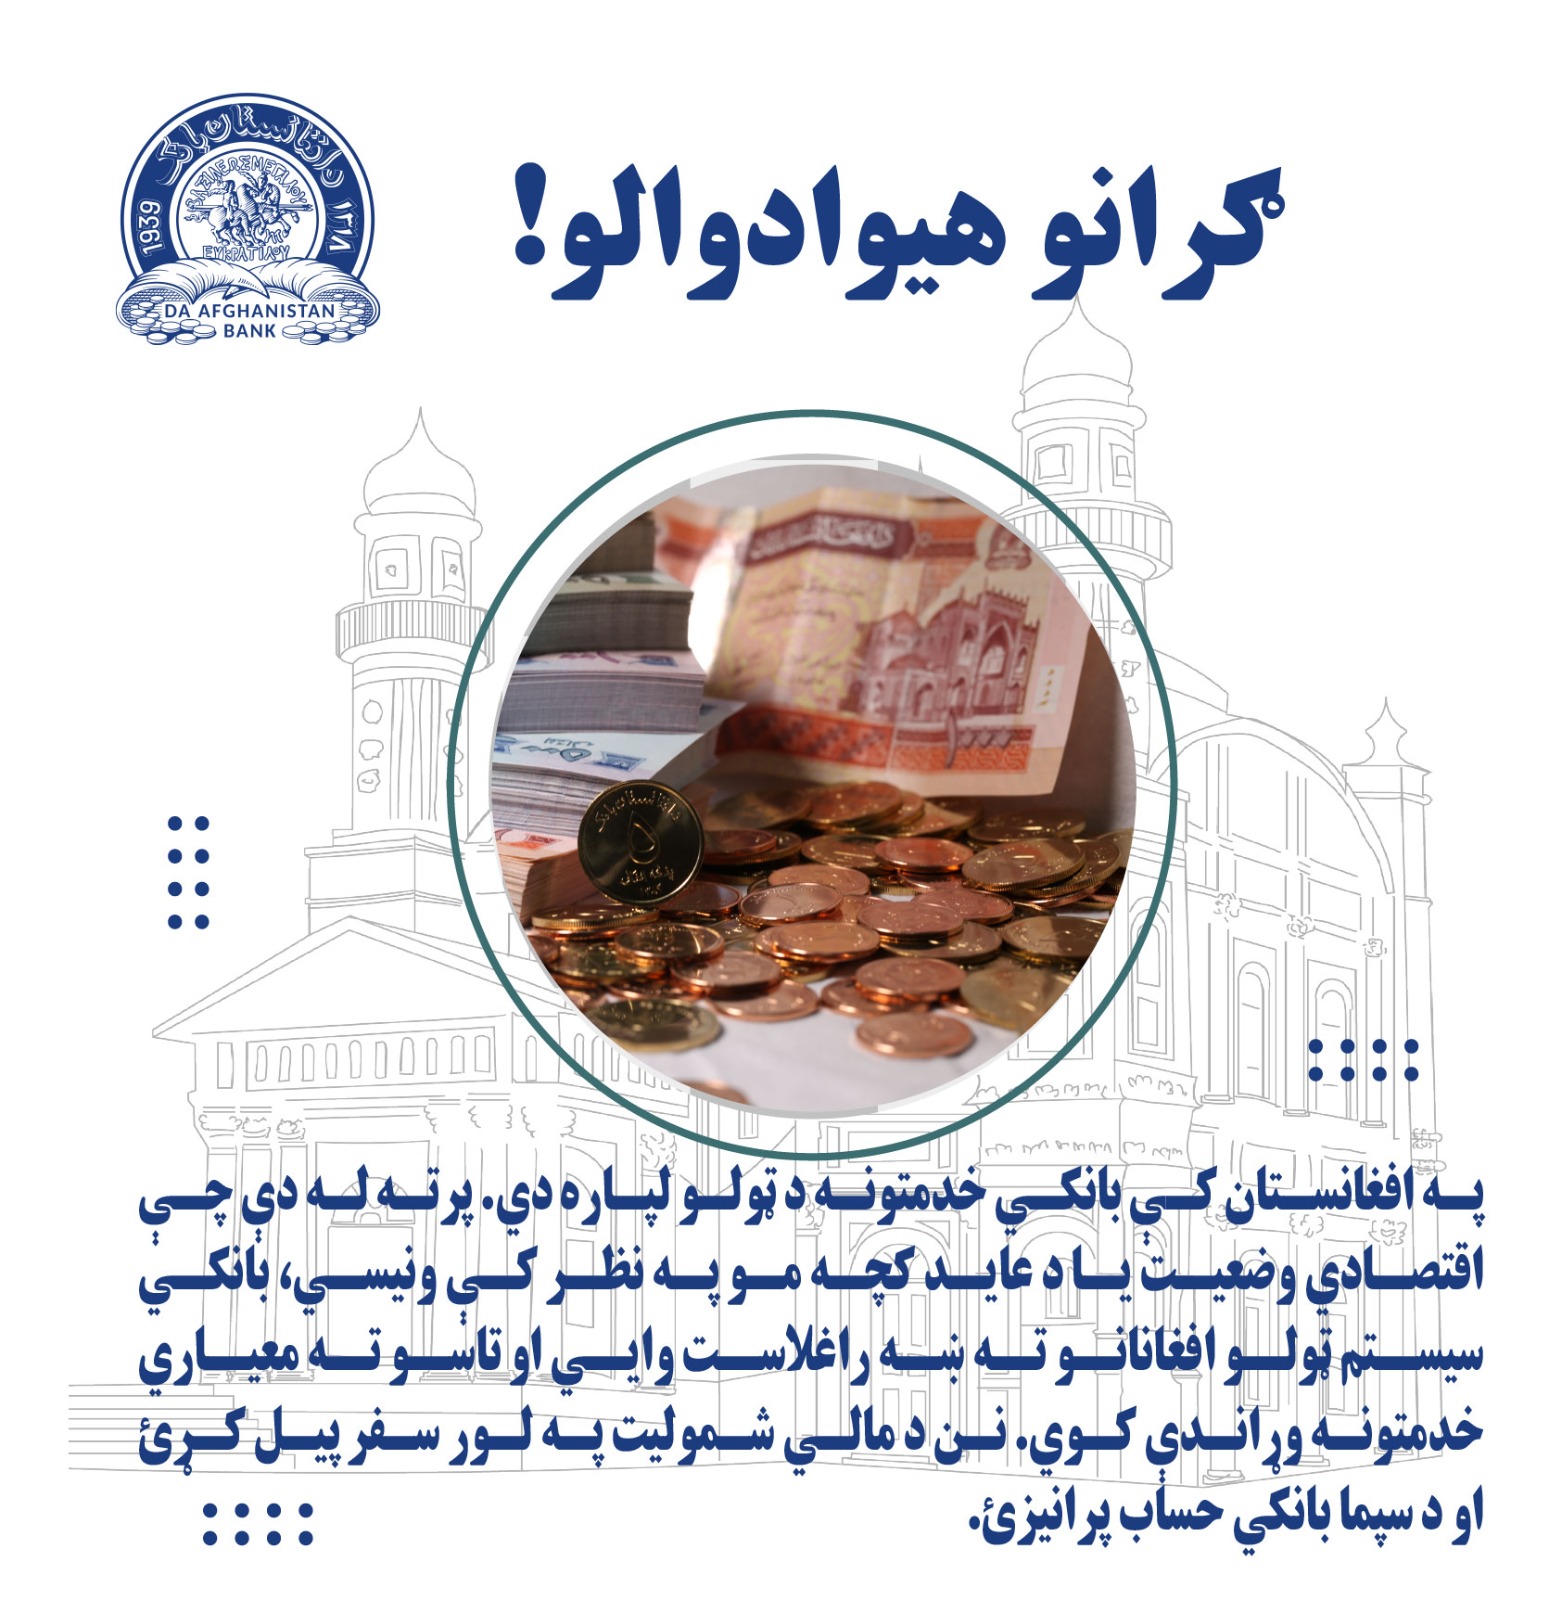 په افغانستان کې بانکی خدمتونه د ټولو لپاره